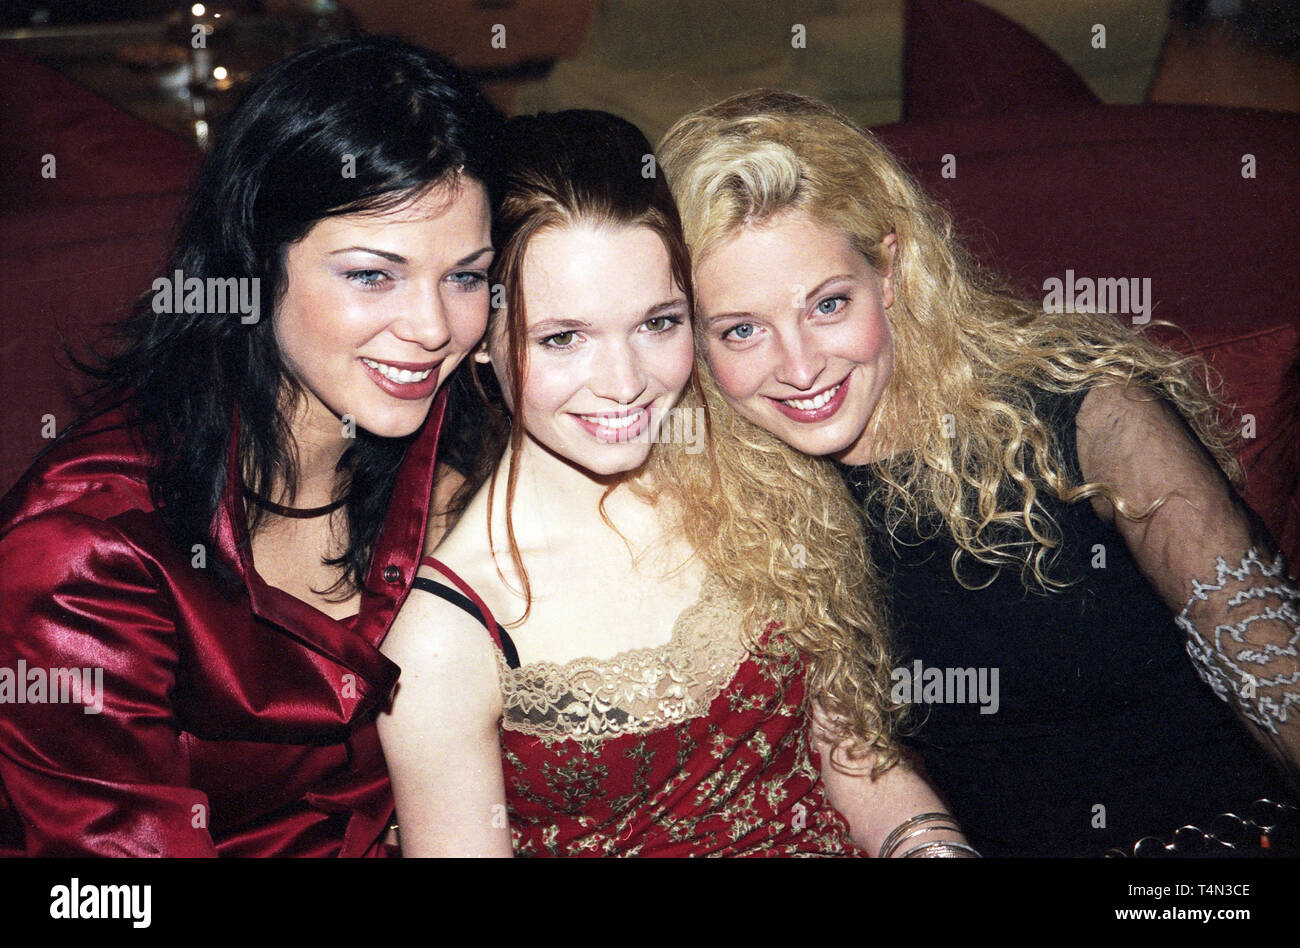 Madchen, Mädchen!, Deutschland 2001, Regie: Dennis Gansel, Darsteller: Jessica Schwarz, Karoline Herfurth, Diana Amft Stockfoto